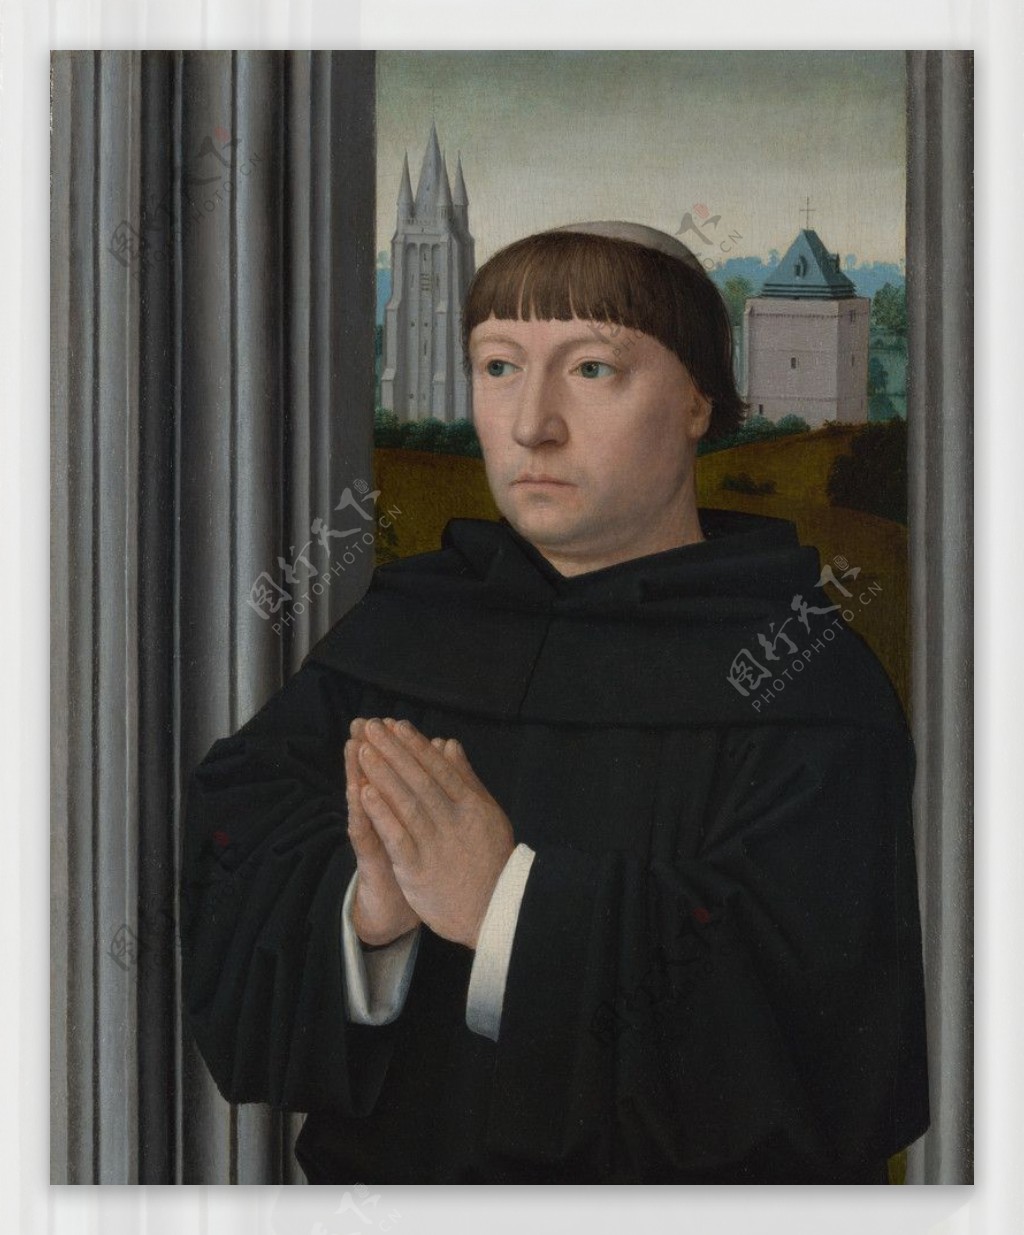 杰勒德大卫一个奥古斯丁修道士祷告图片